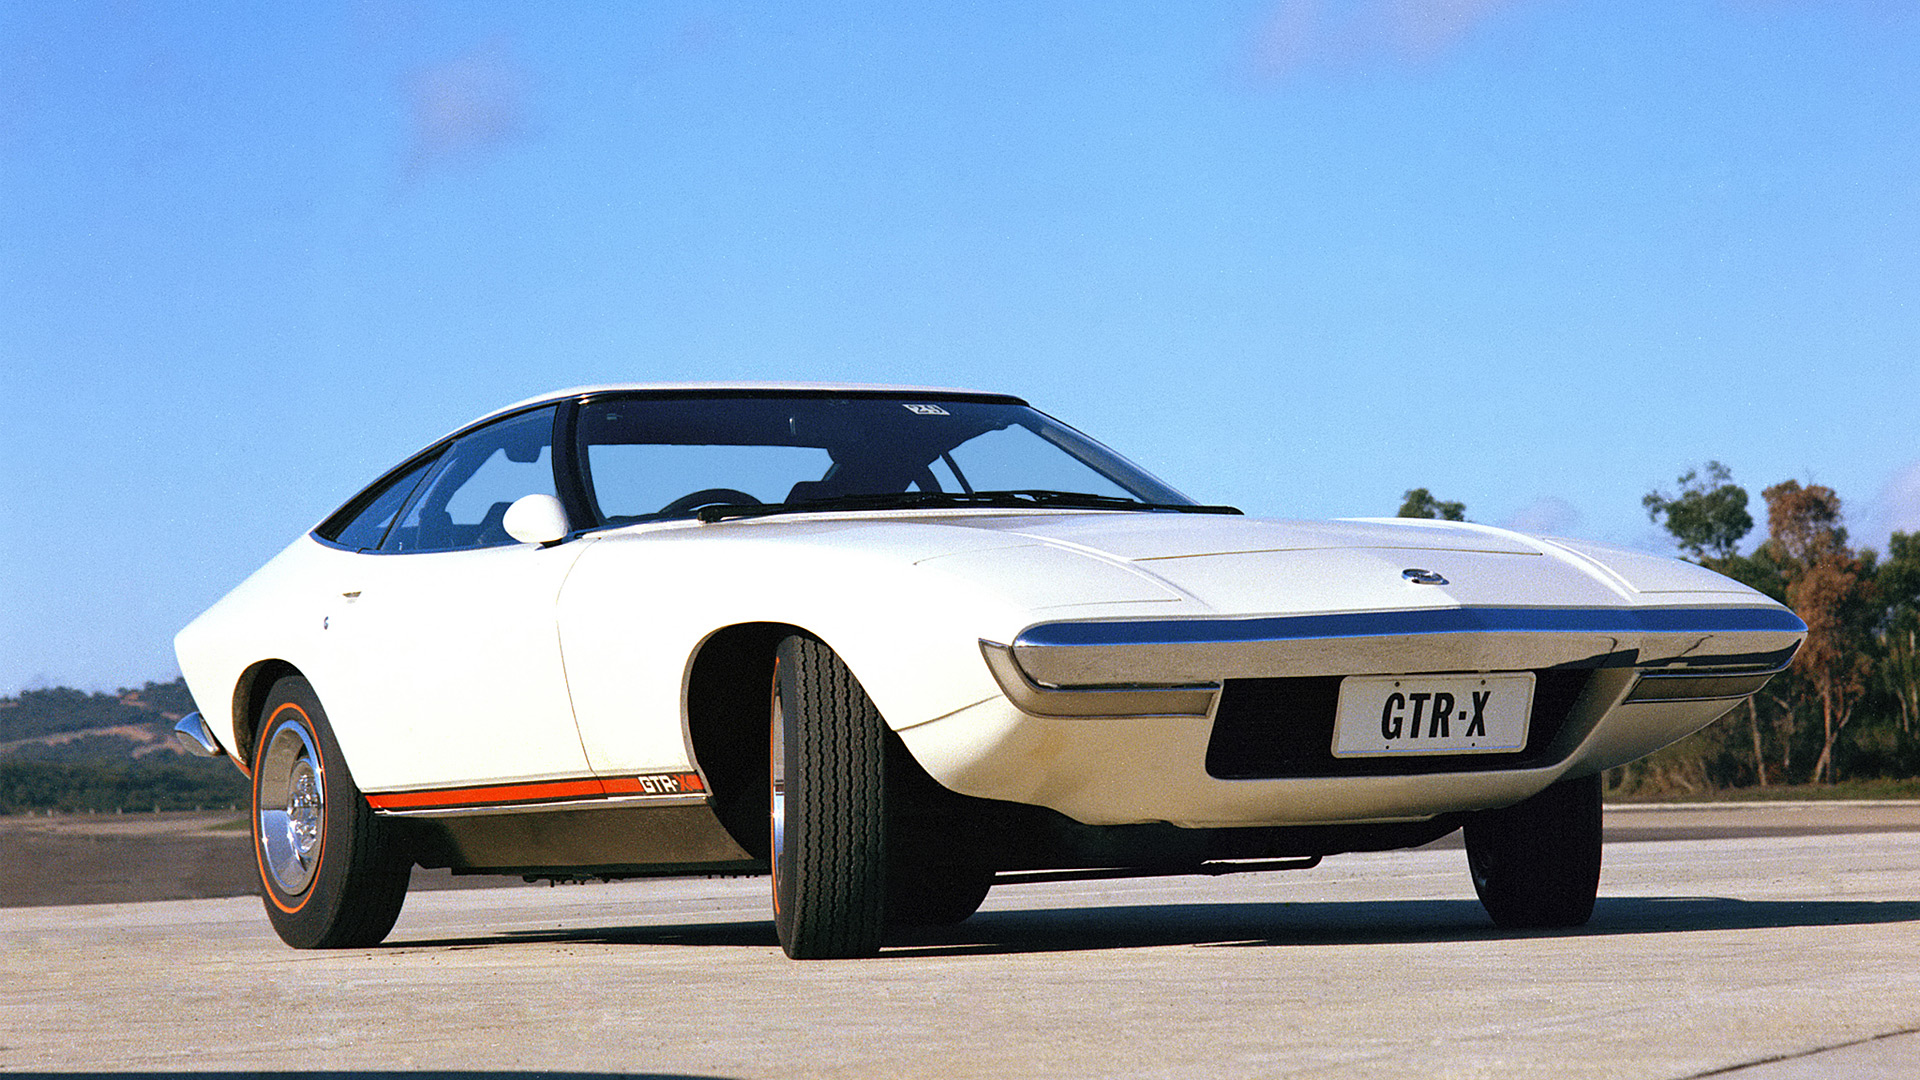  1970 Holden Torana GTR-X Concept Wallpaper.